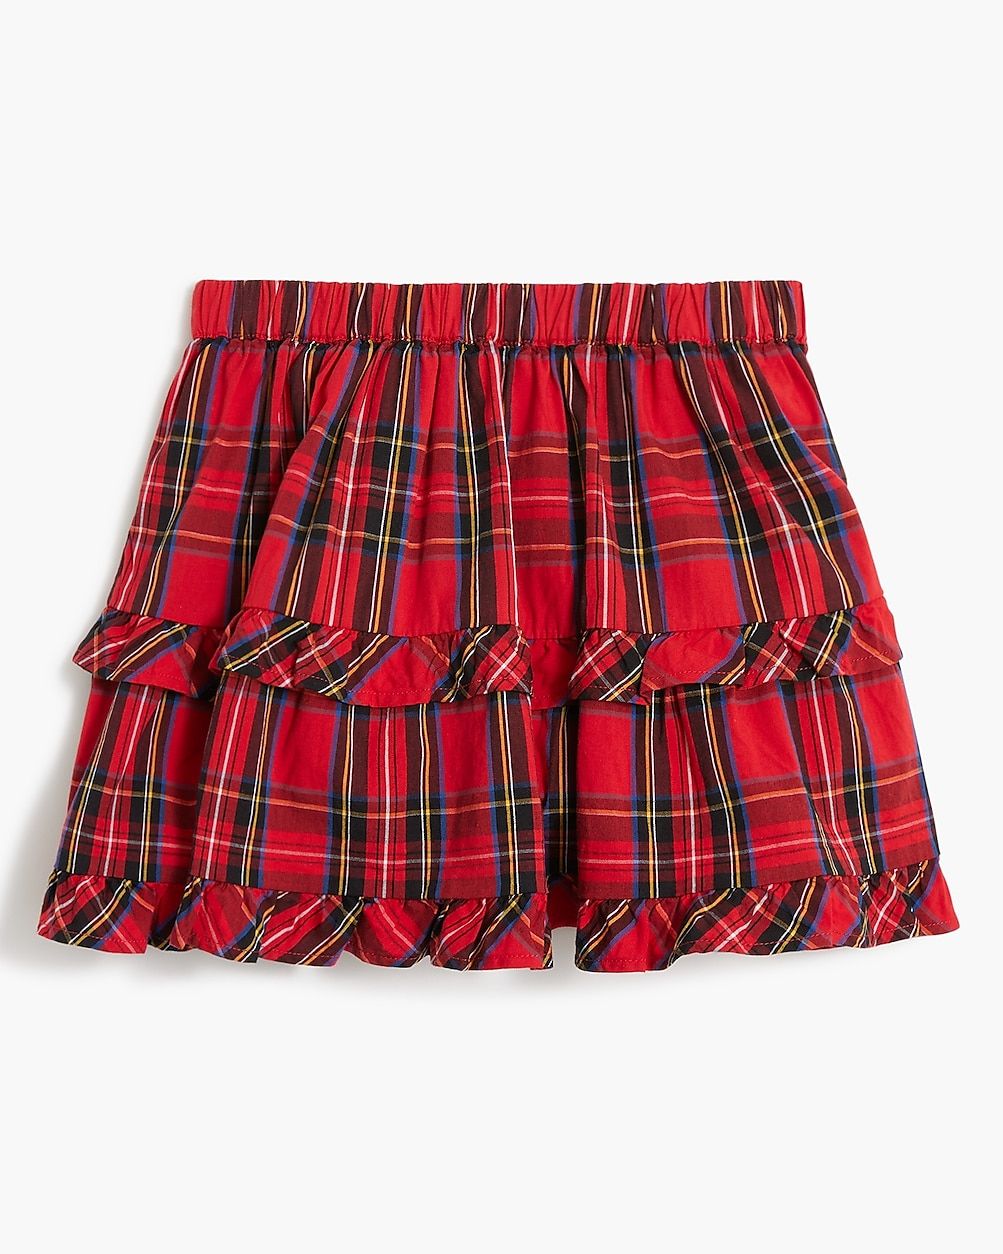 Girls' tartan tiered ruffle skirt | J.Crew Factory